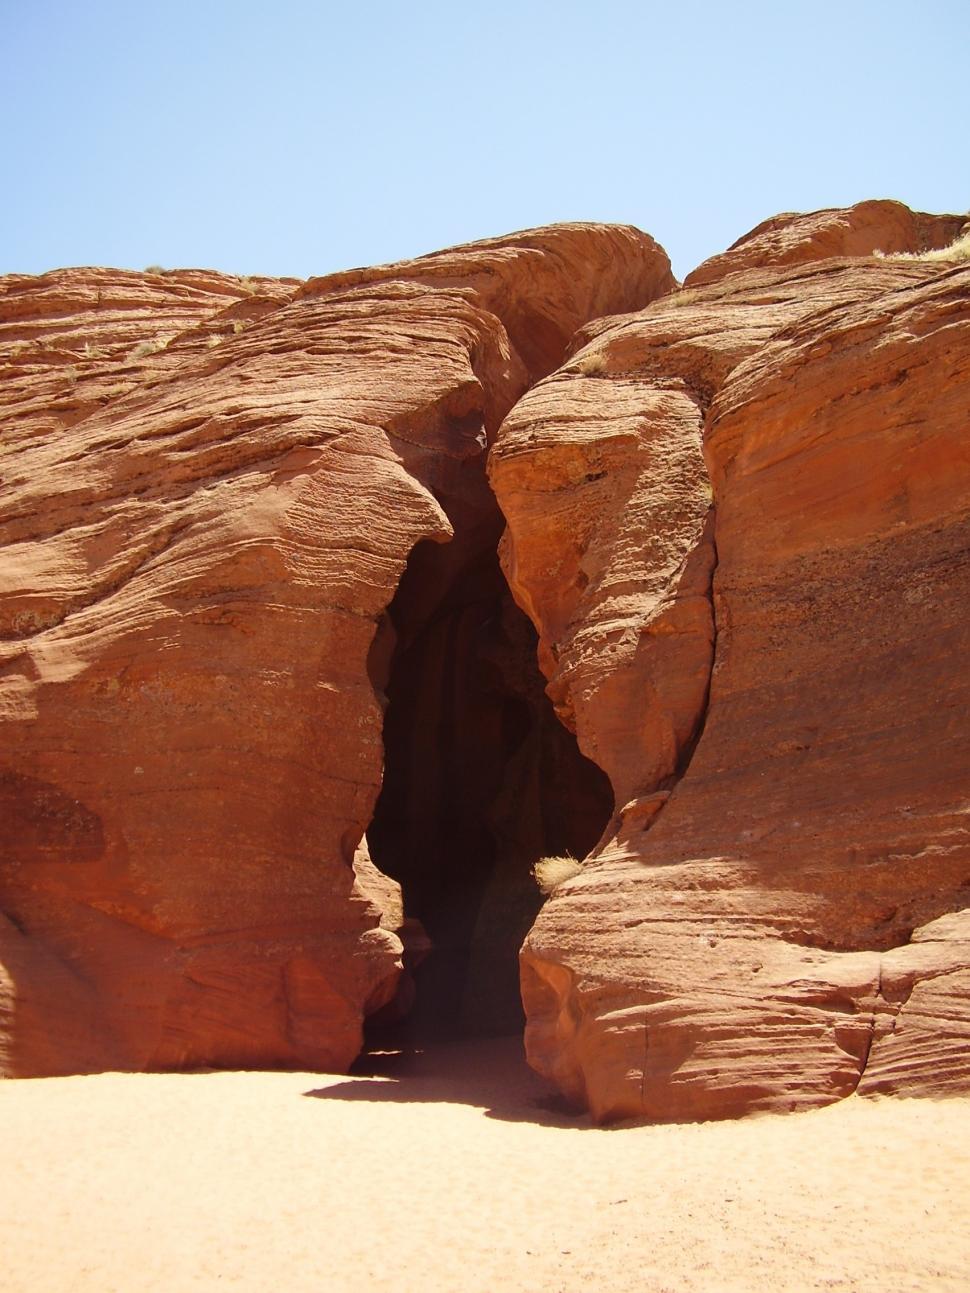 Free Image of Massive Rock Formation Amid Desert Landscape 